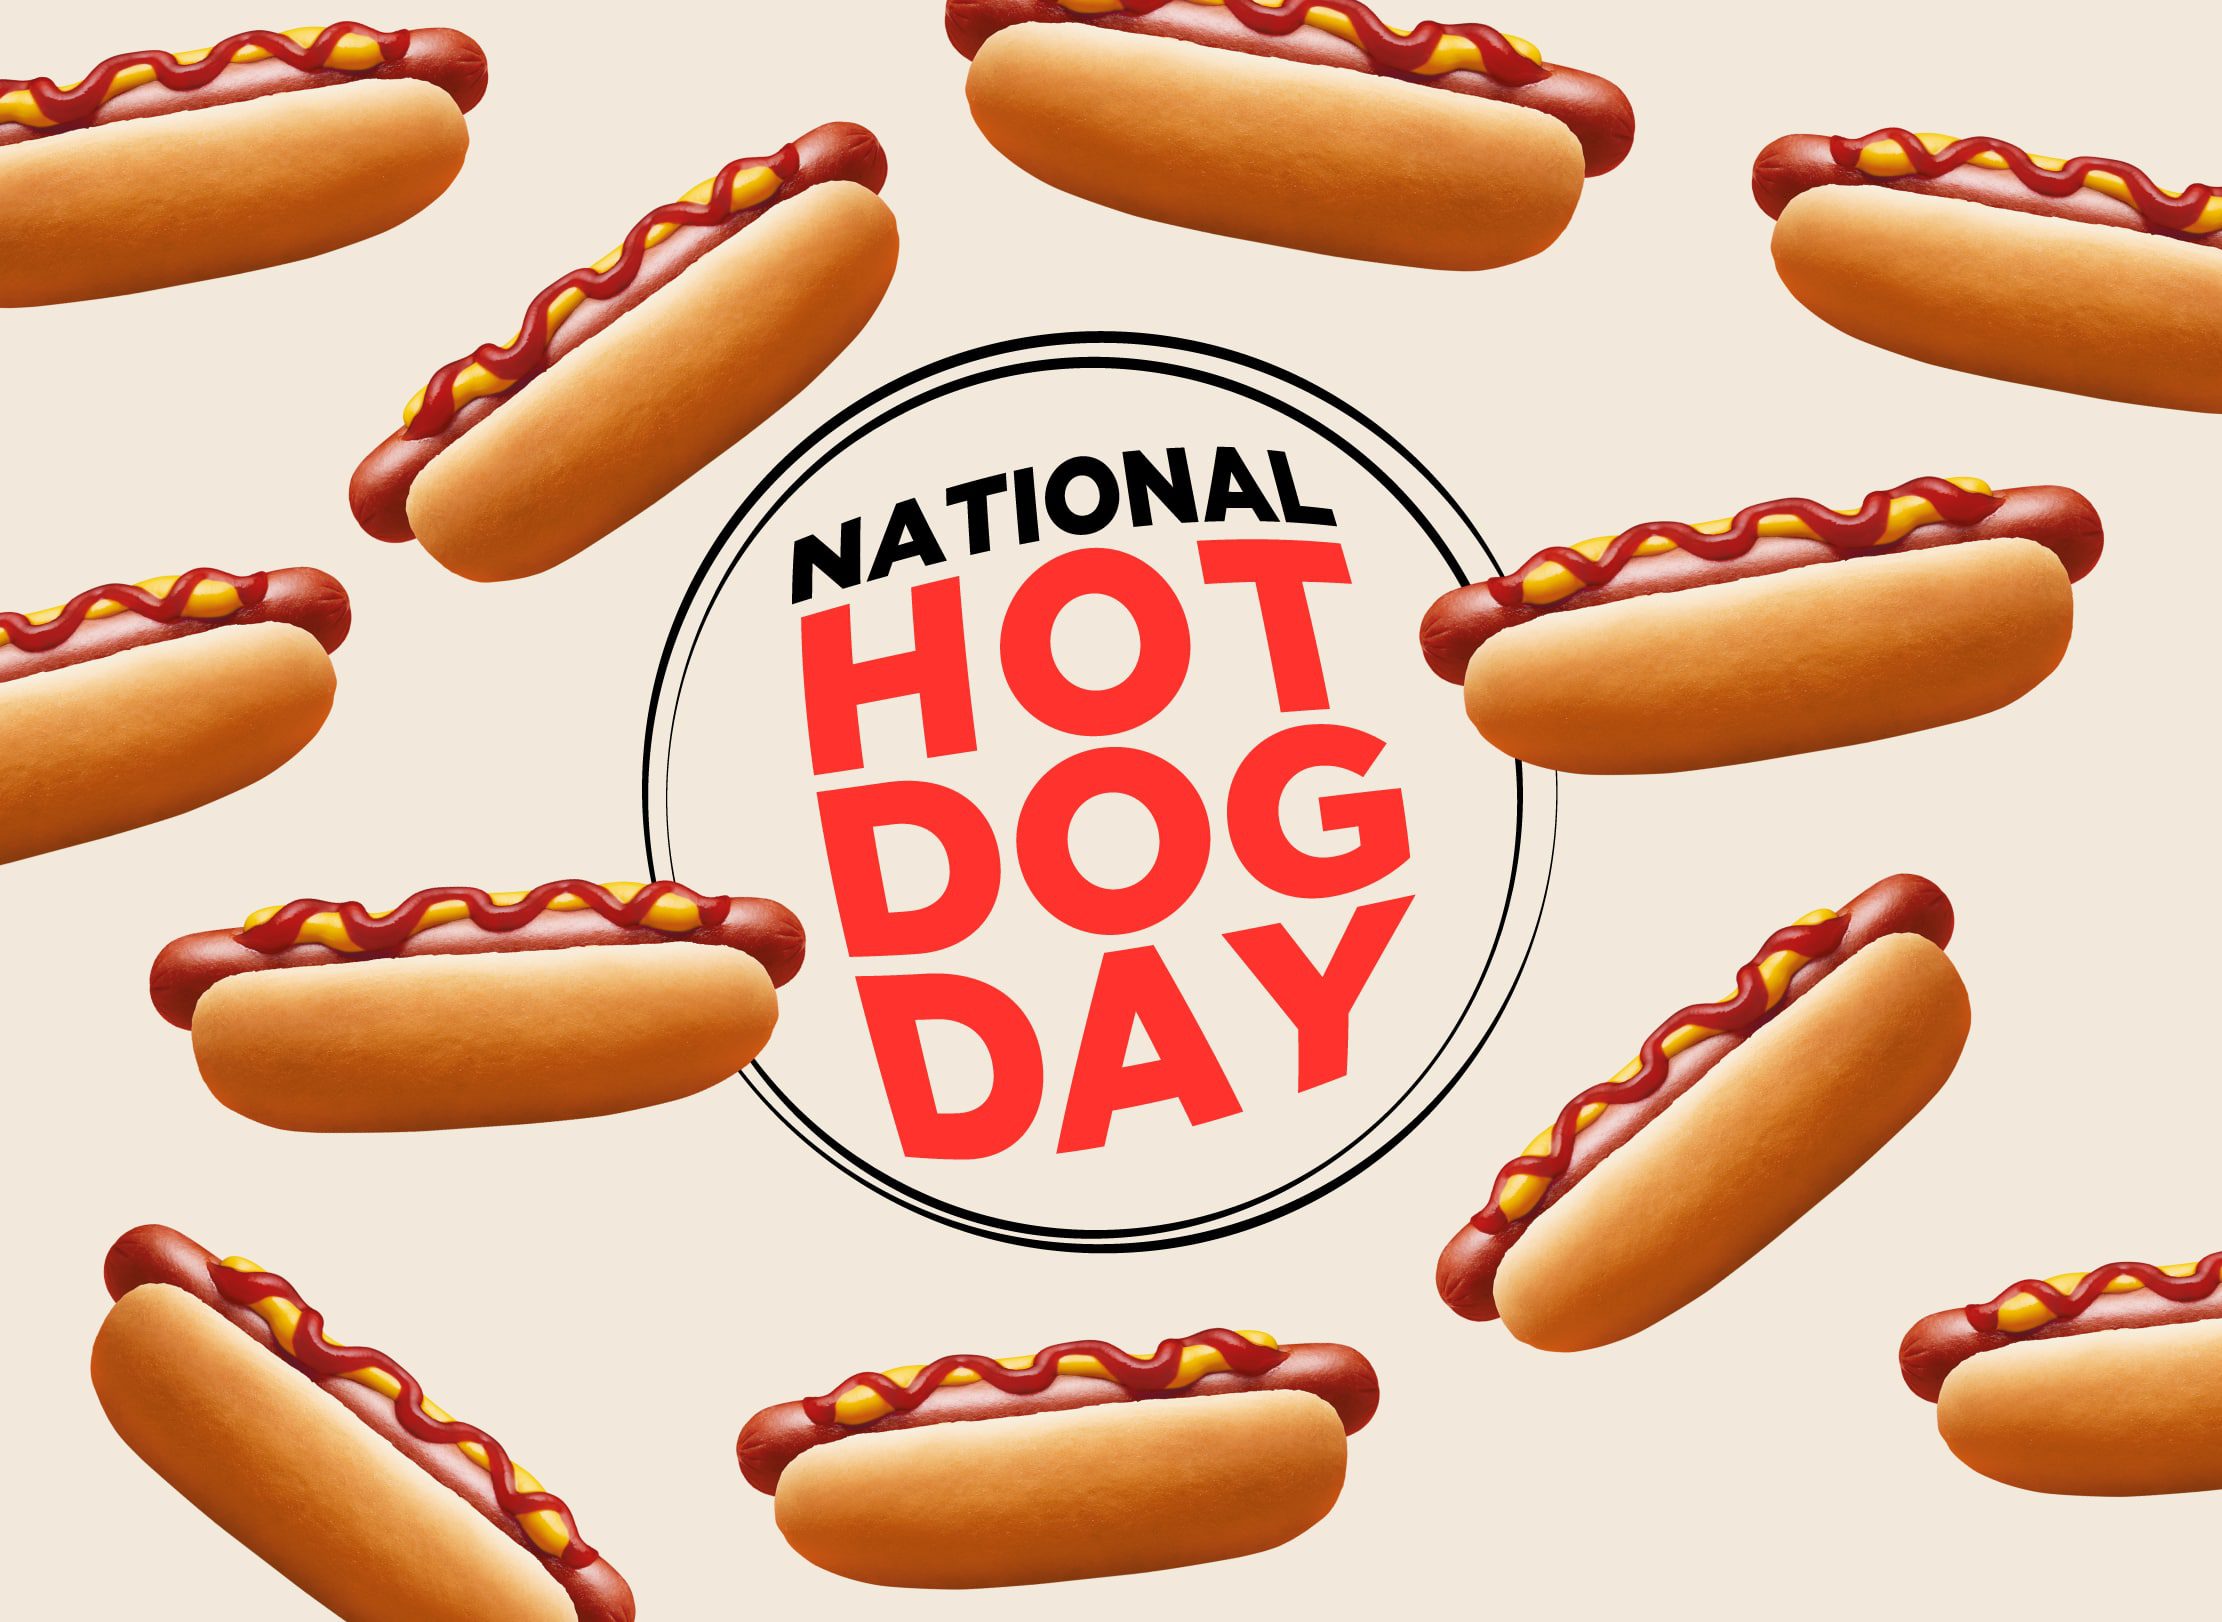 National Hotdog Day image